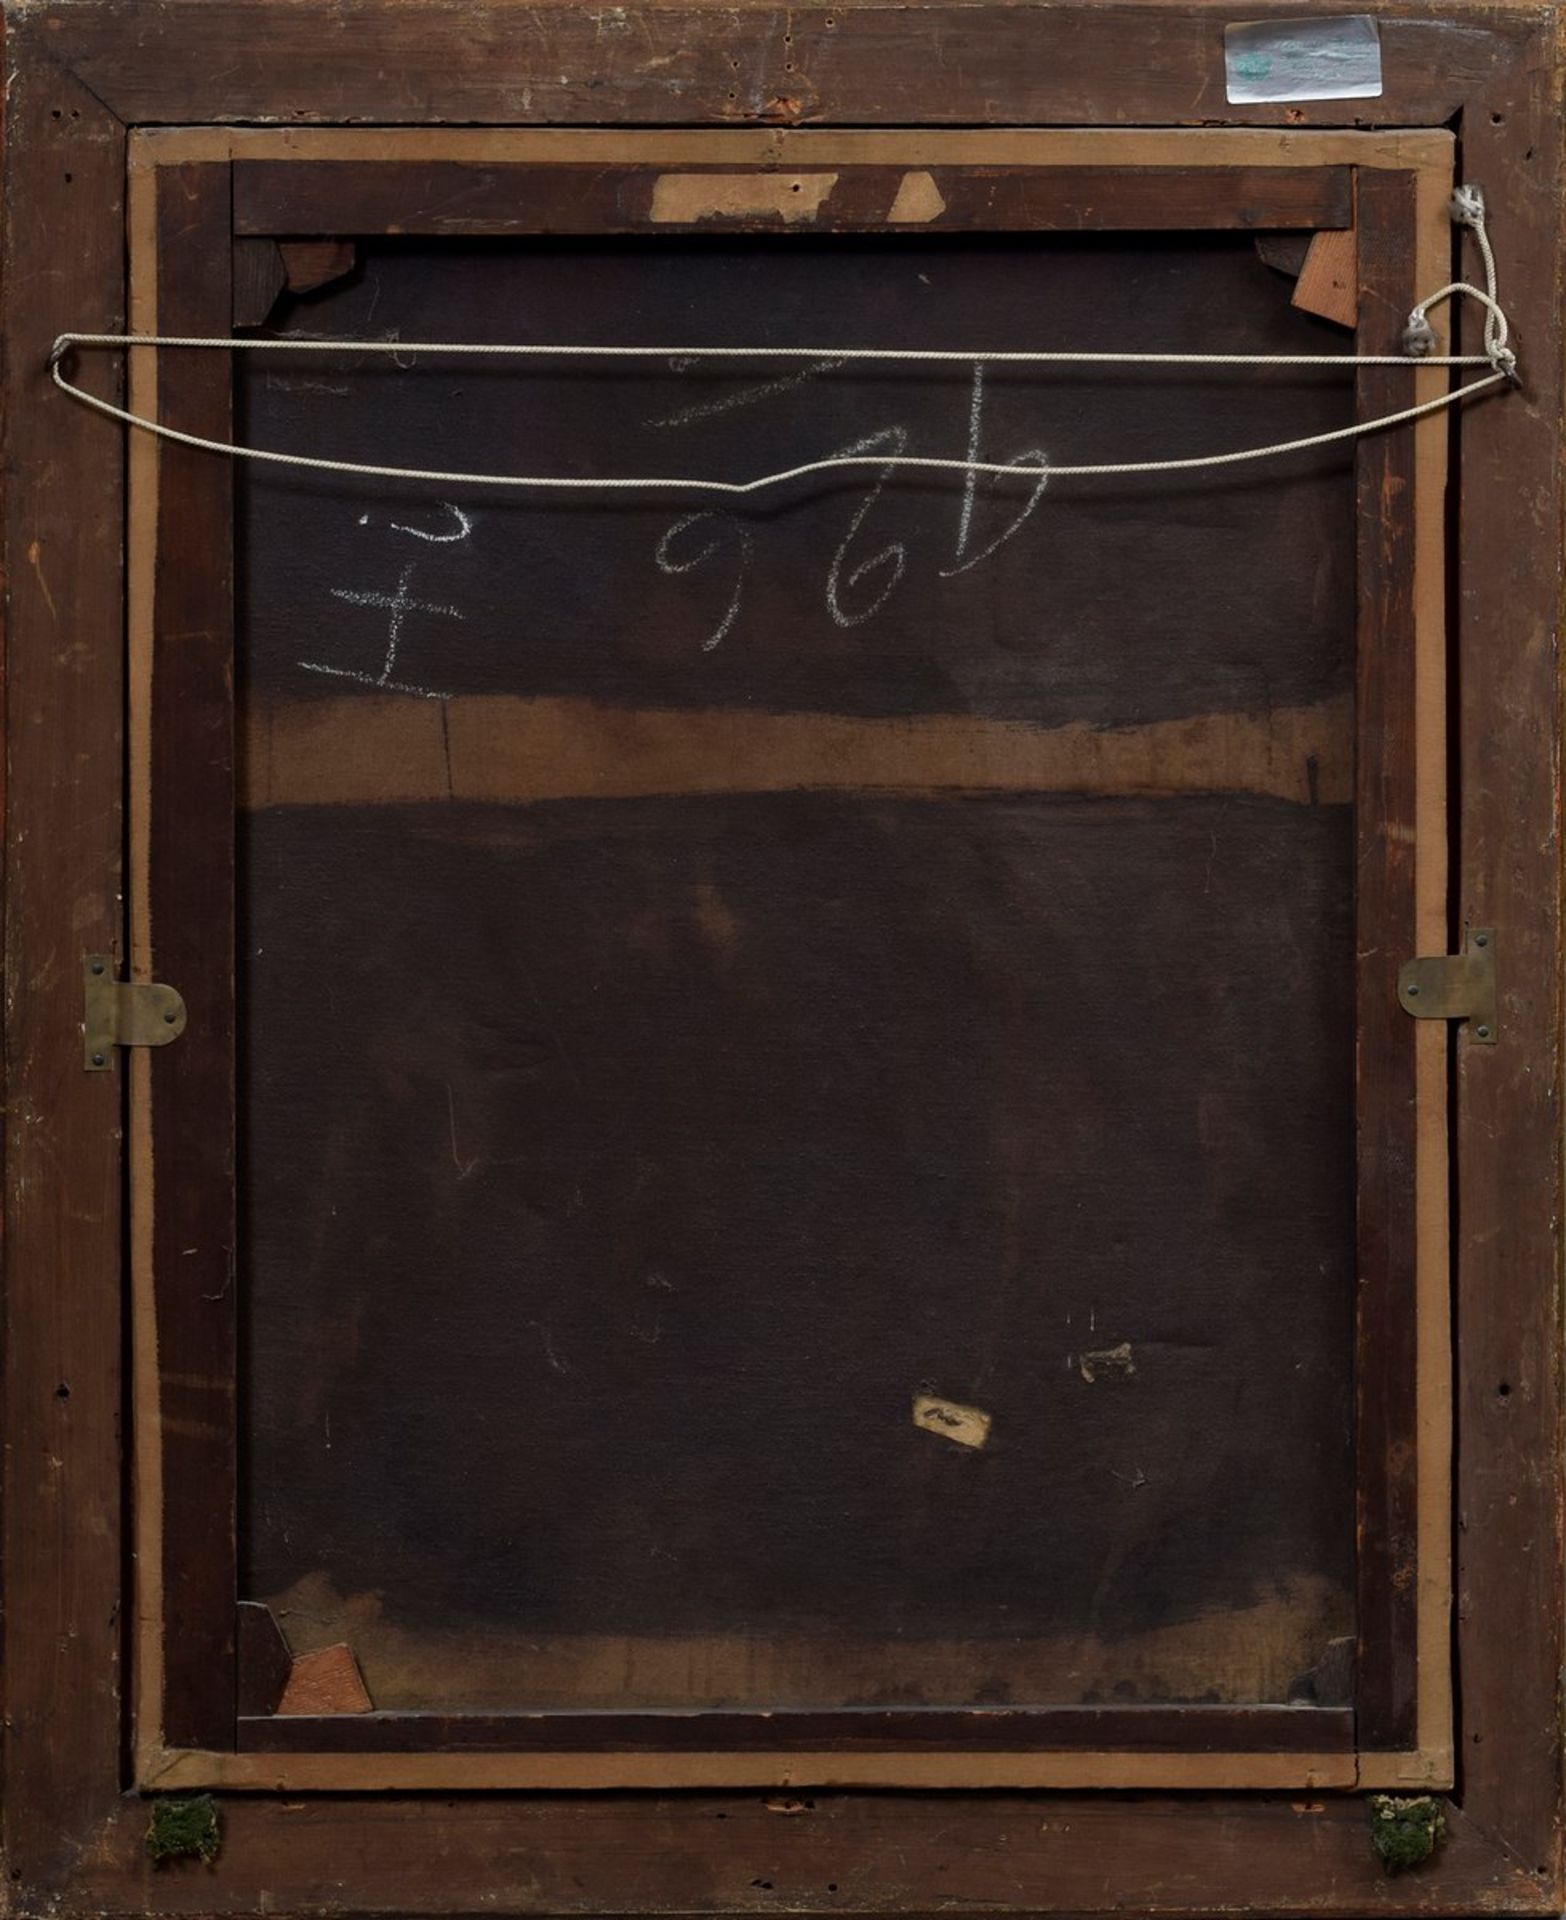 Unbekannter Künstler des 18./19.Jh. "Der kleine Eselreiter", Öl/Leinwand, 68x53,5cm (m.R. 80,5x66, - Bild 5 aus 5